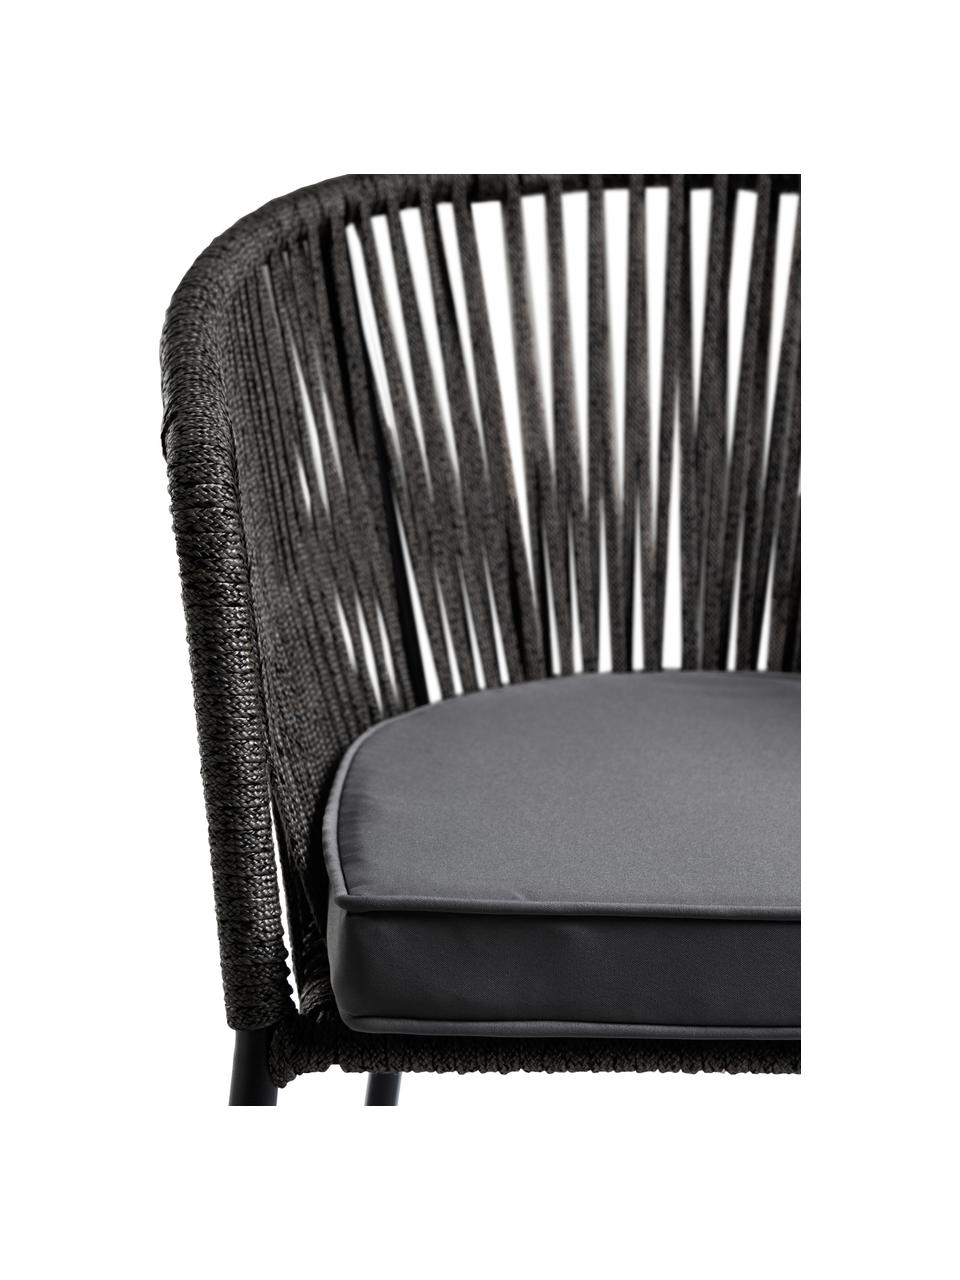 Krzesło ogrodowe Yanet, Stelaż: metal ocynkowany i lakier, Tapicerka: poliester, Czarny, S 56 x G 51 cm